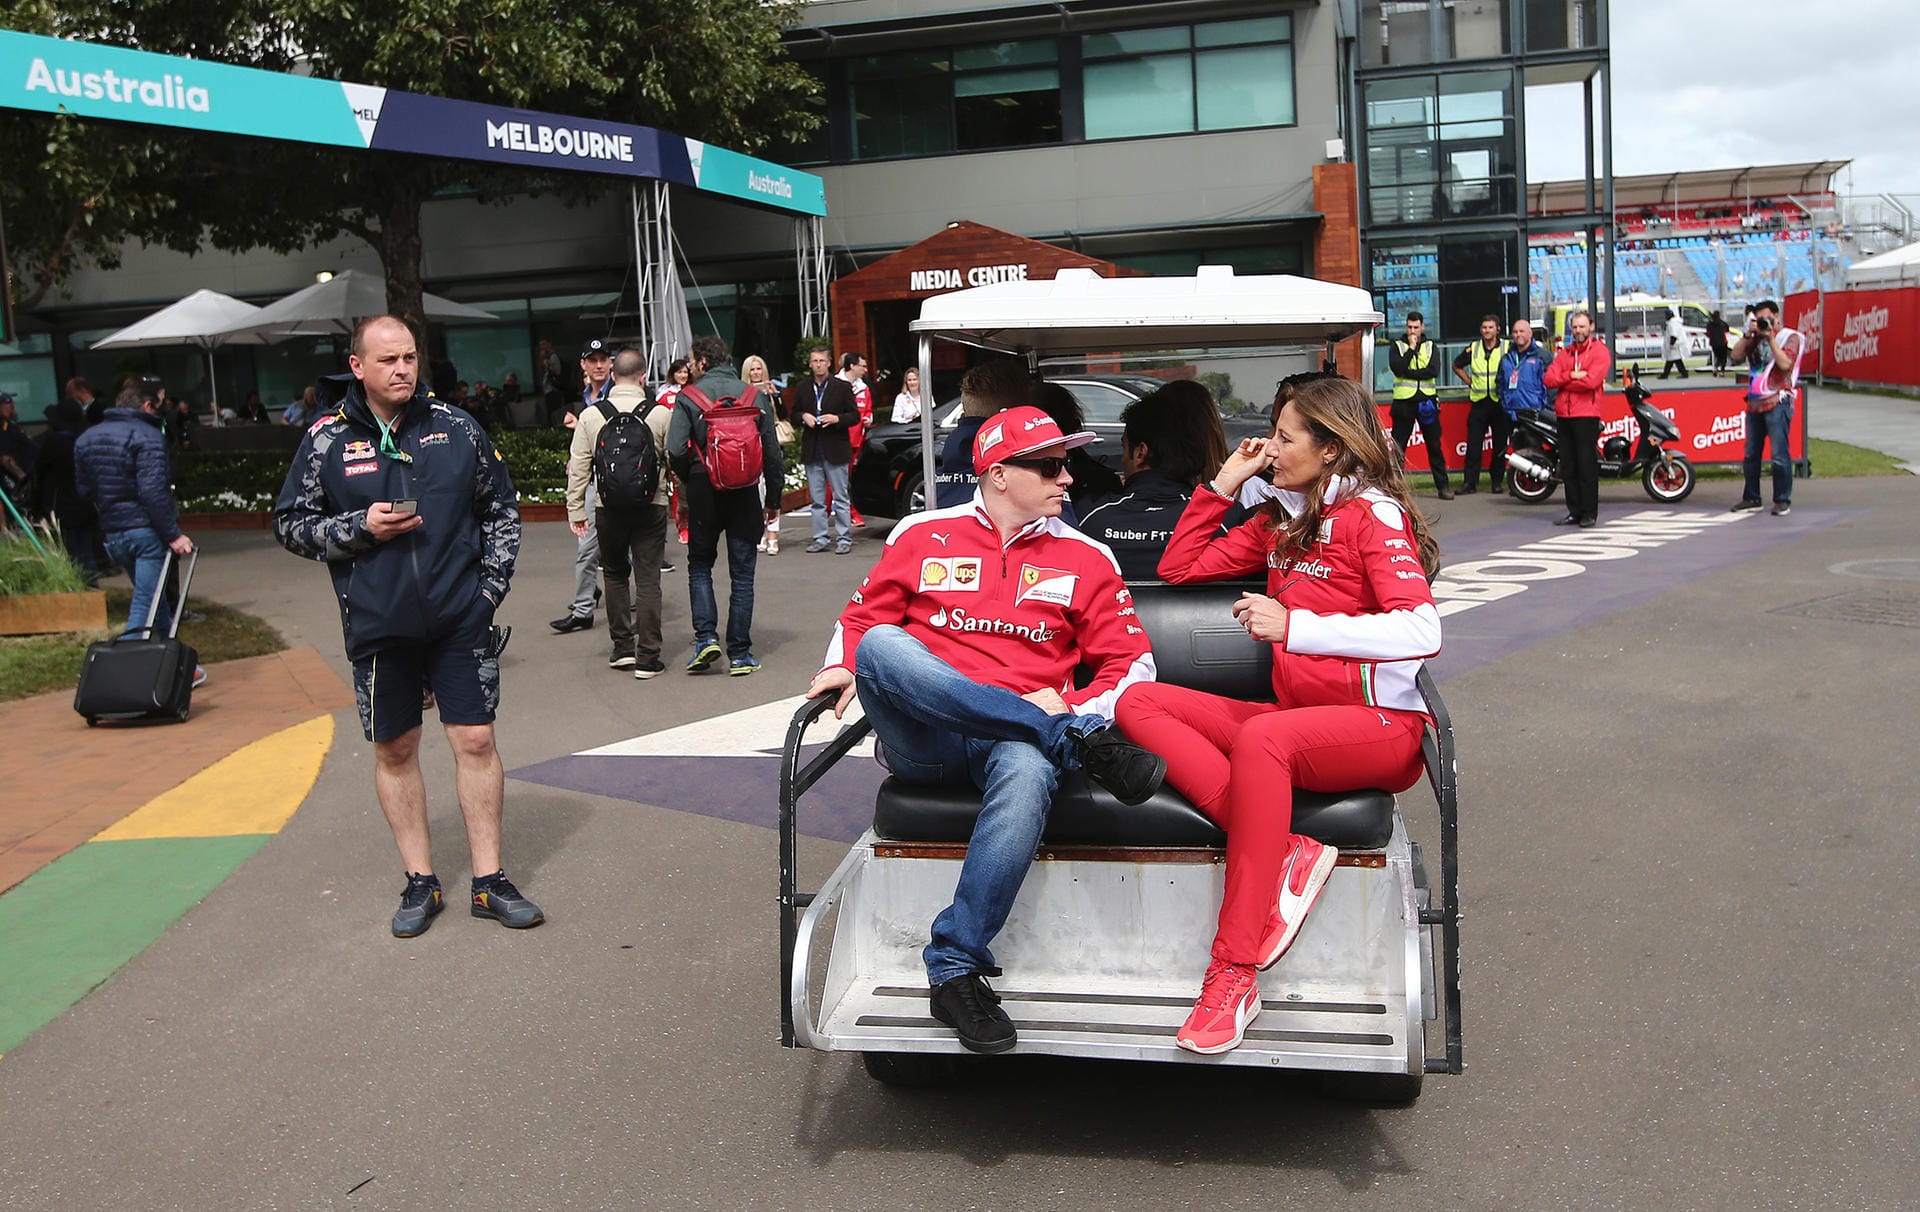 Cool, cooler, Iceman: Kimi Räikkönen klönt ein wenig auf dem Rücksitz eines Golfcarts.